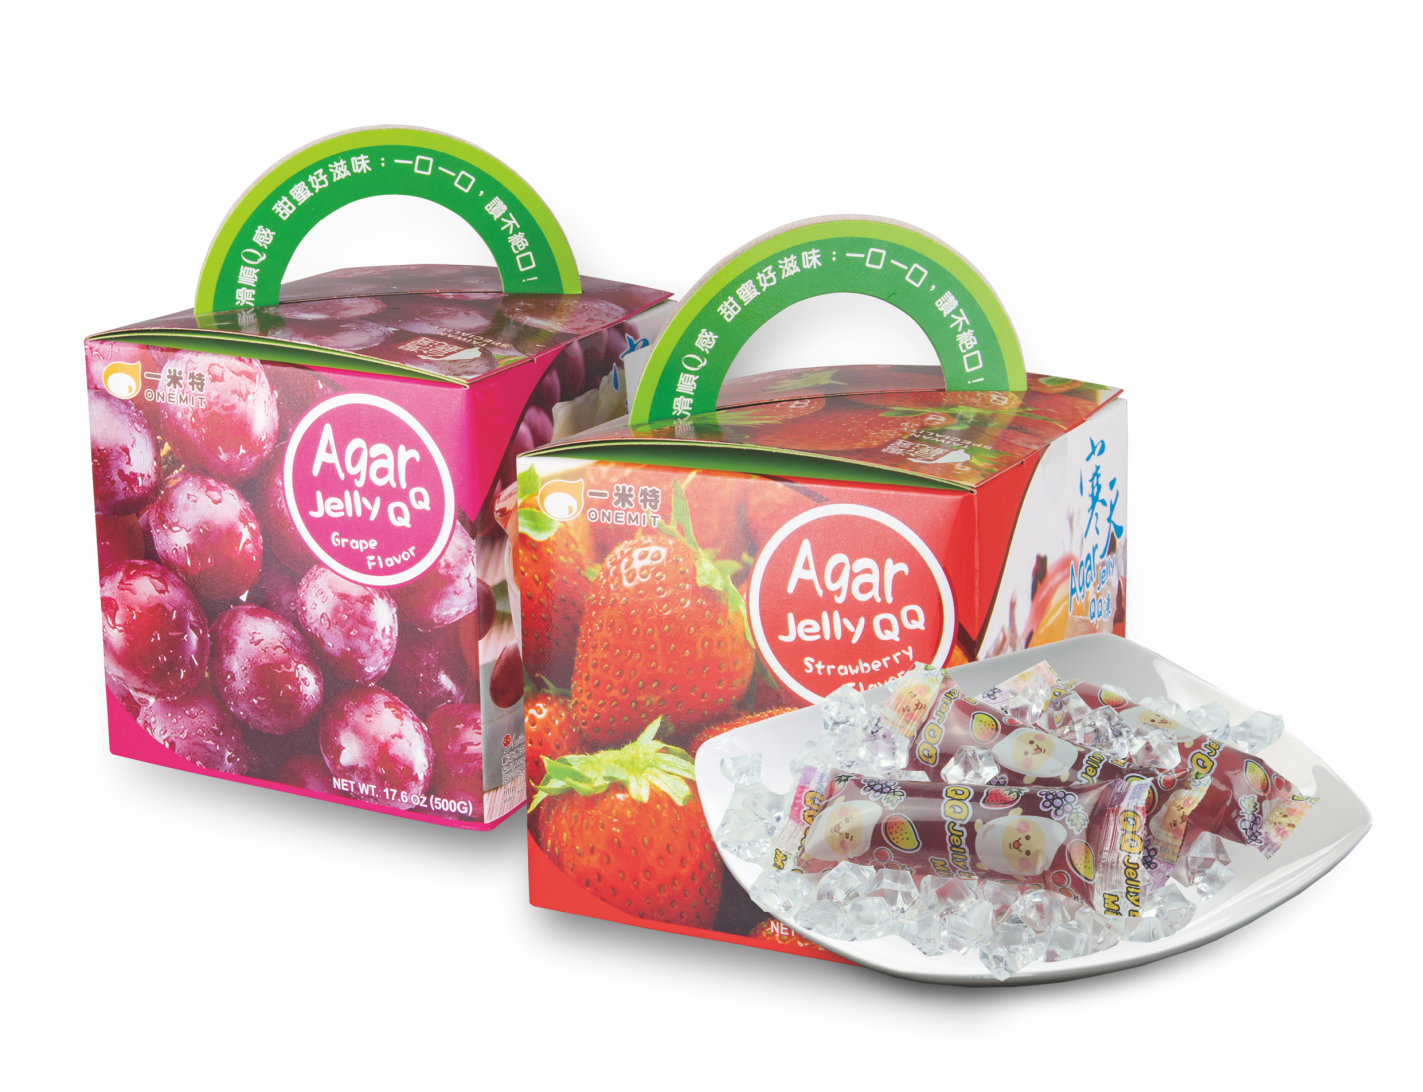 寒天Jelly QQ凍禮盒<br>Agar Jelly QQ Gift Box  |產品資訊|果凍/布丁|果凍-常溫